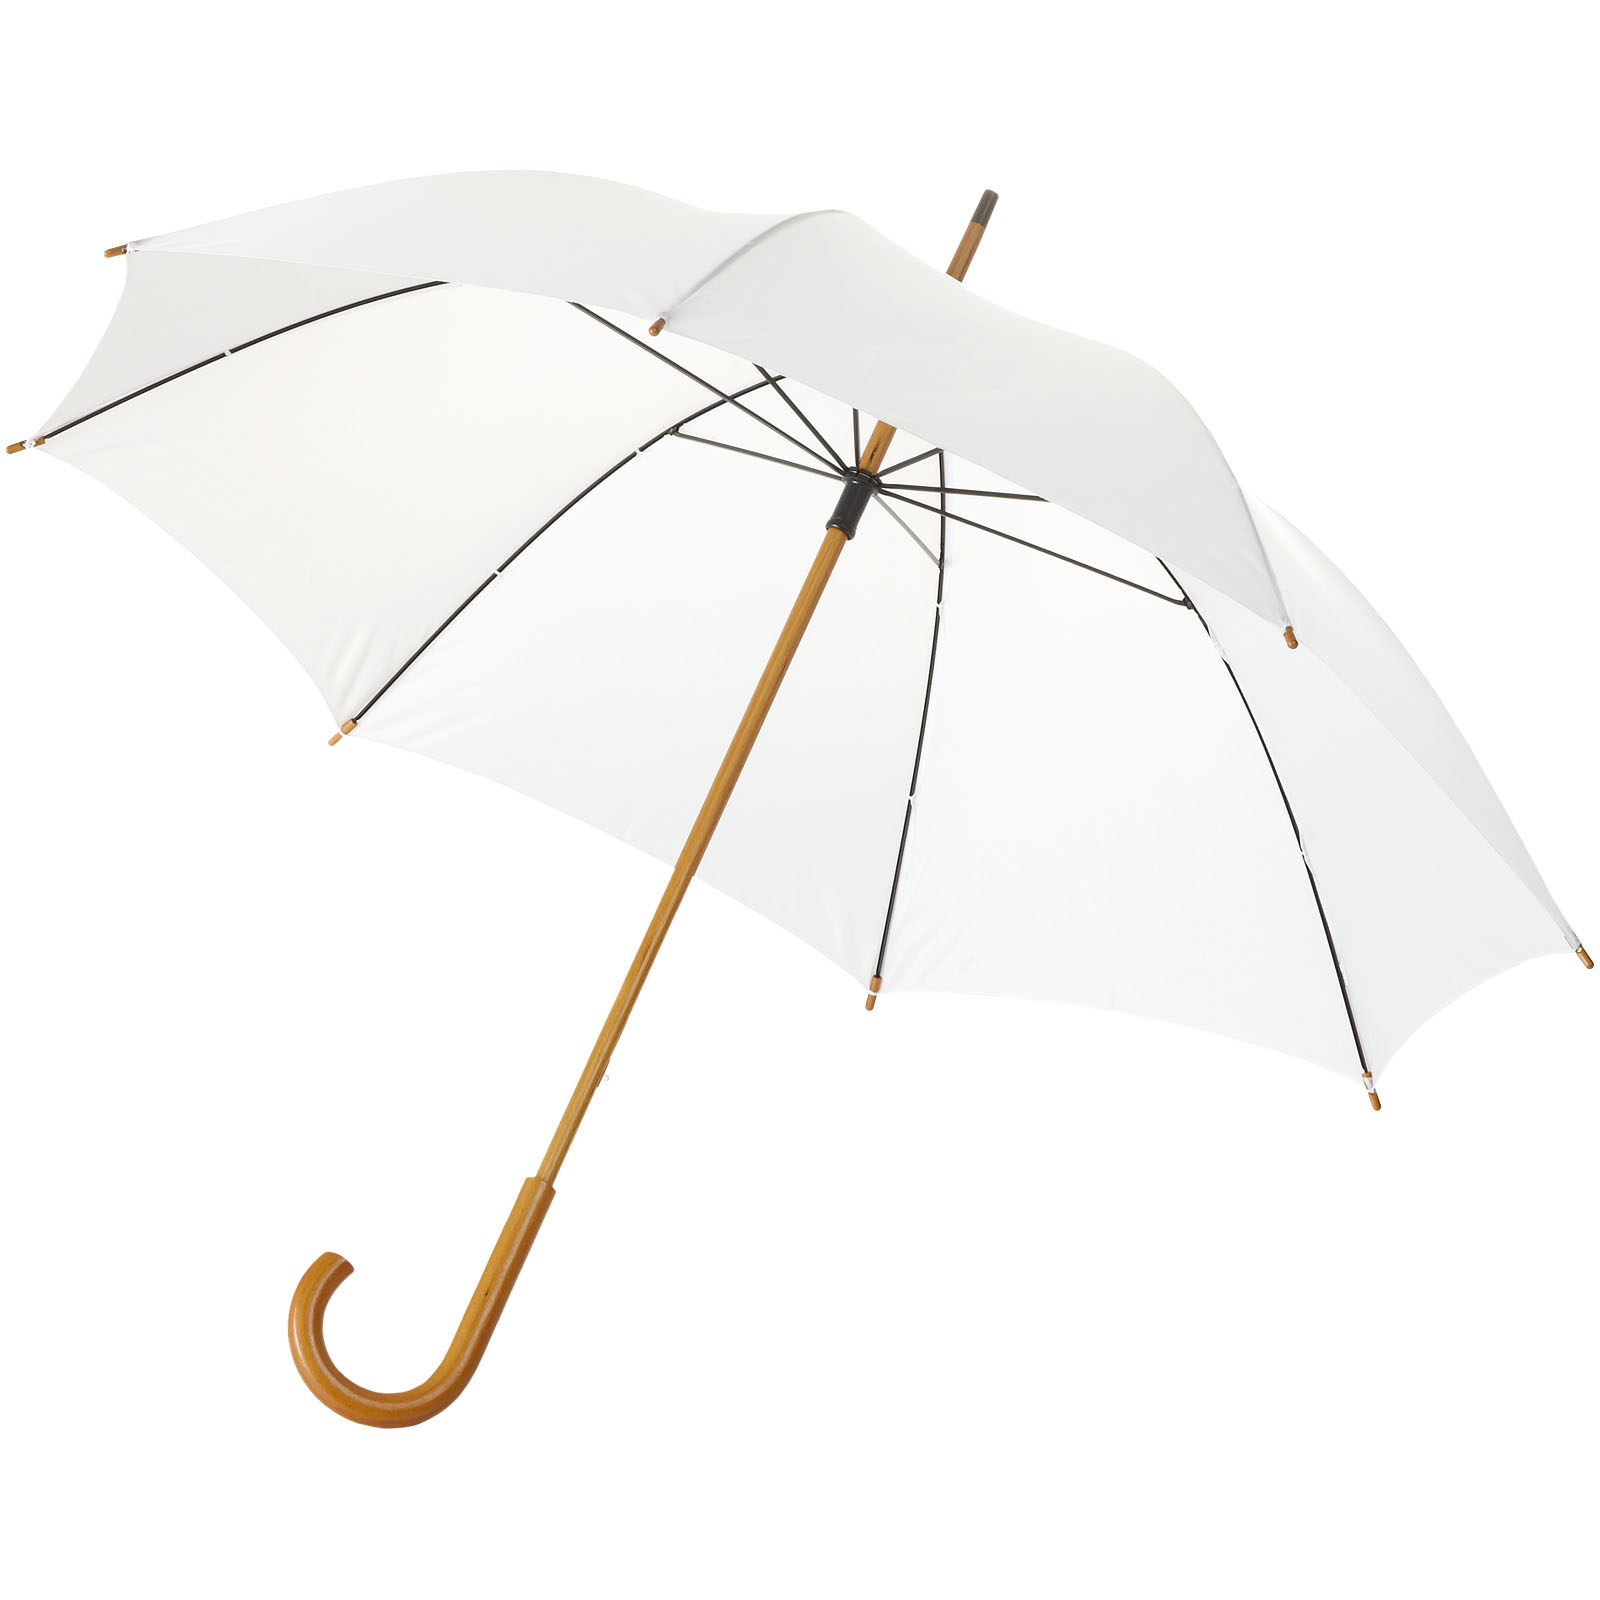 Advertising Standard Umbrellas - Jova 23